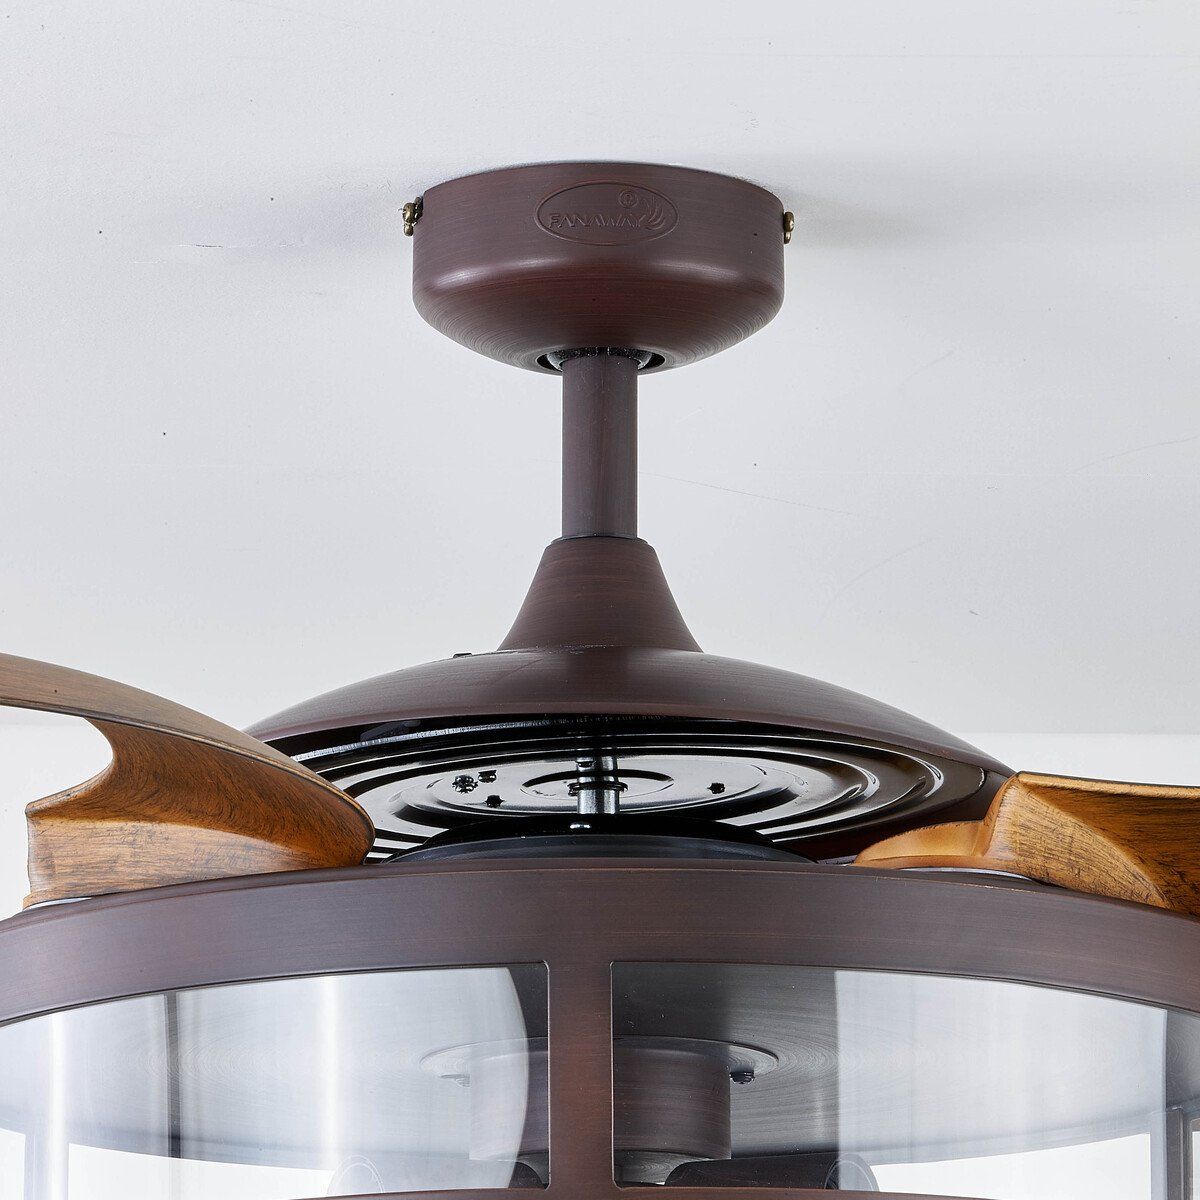 Plafonnier ventilateur FANAWAY CLASSIC en bois et métal bronze